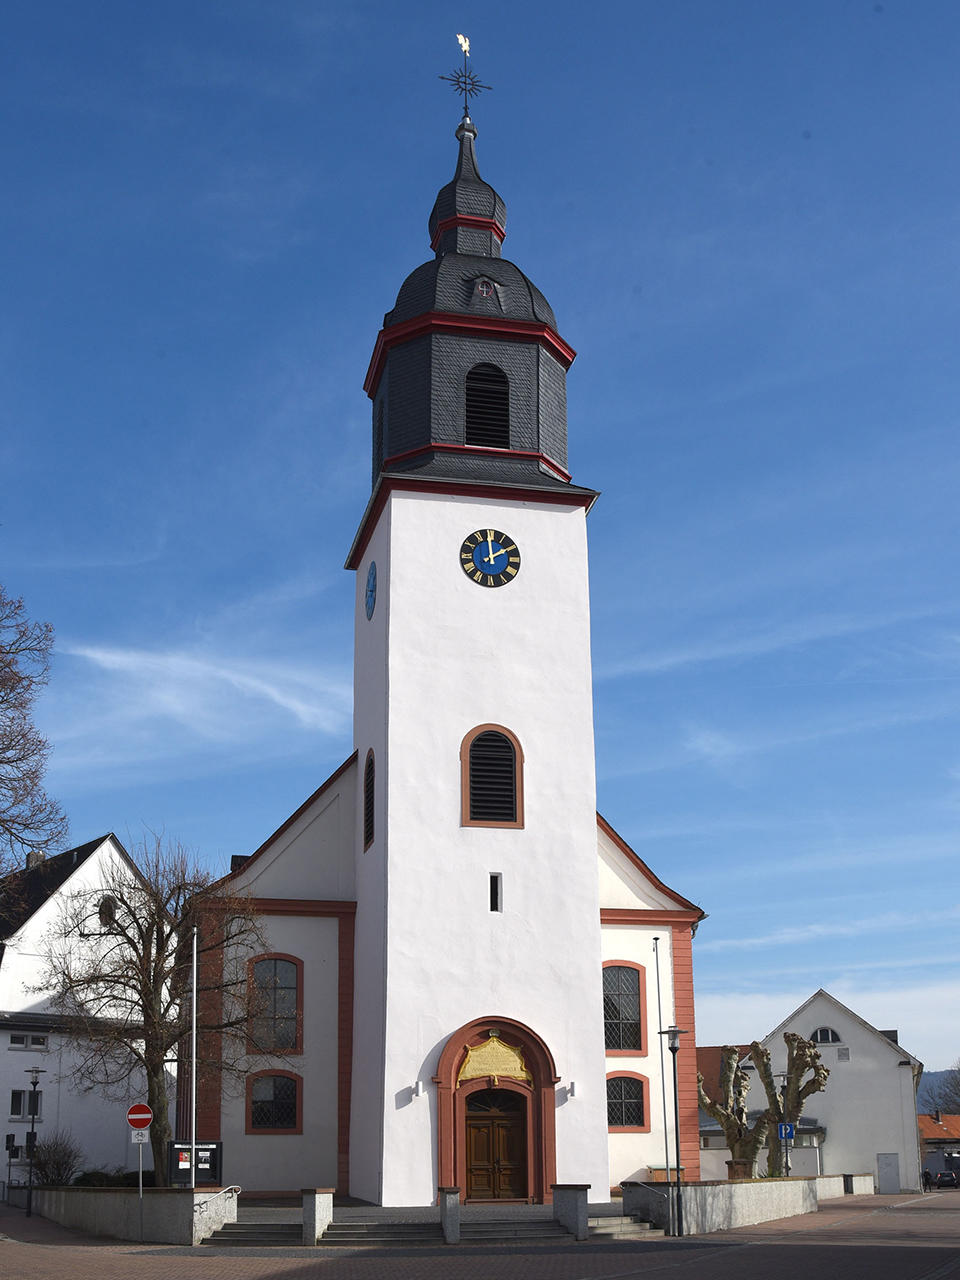 Die evangelische Martinskirche Pfungstadt wurde in der Zeit von 1746 bis 1748 nach einem Plan des Pfarrers Johann Conrad Lichtenberg über den Fundamenten mehrerer Vorgängerkirchen neu erbaut. Der mittelalterliche Turm wurde umgestaltet und 1752 vollendet.